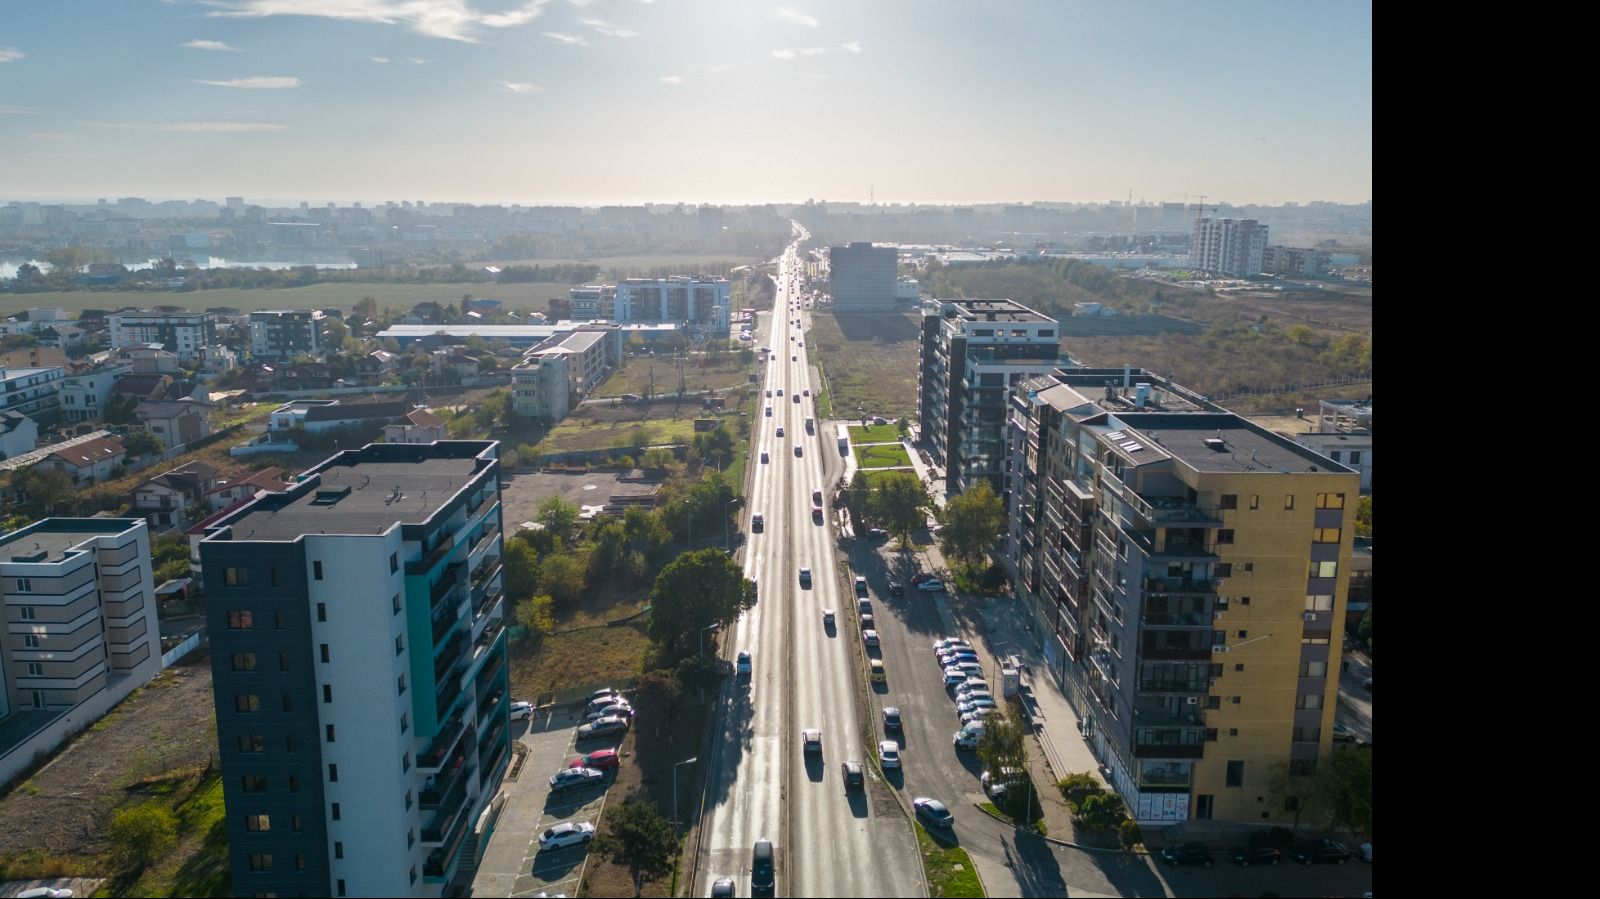 Mare atenție! Se produc schimbări importante în traficul rutier din municipiul Constanța - x-schimbari-1707306798.jpg